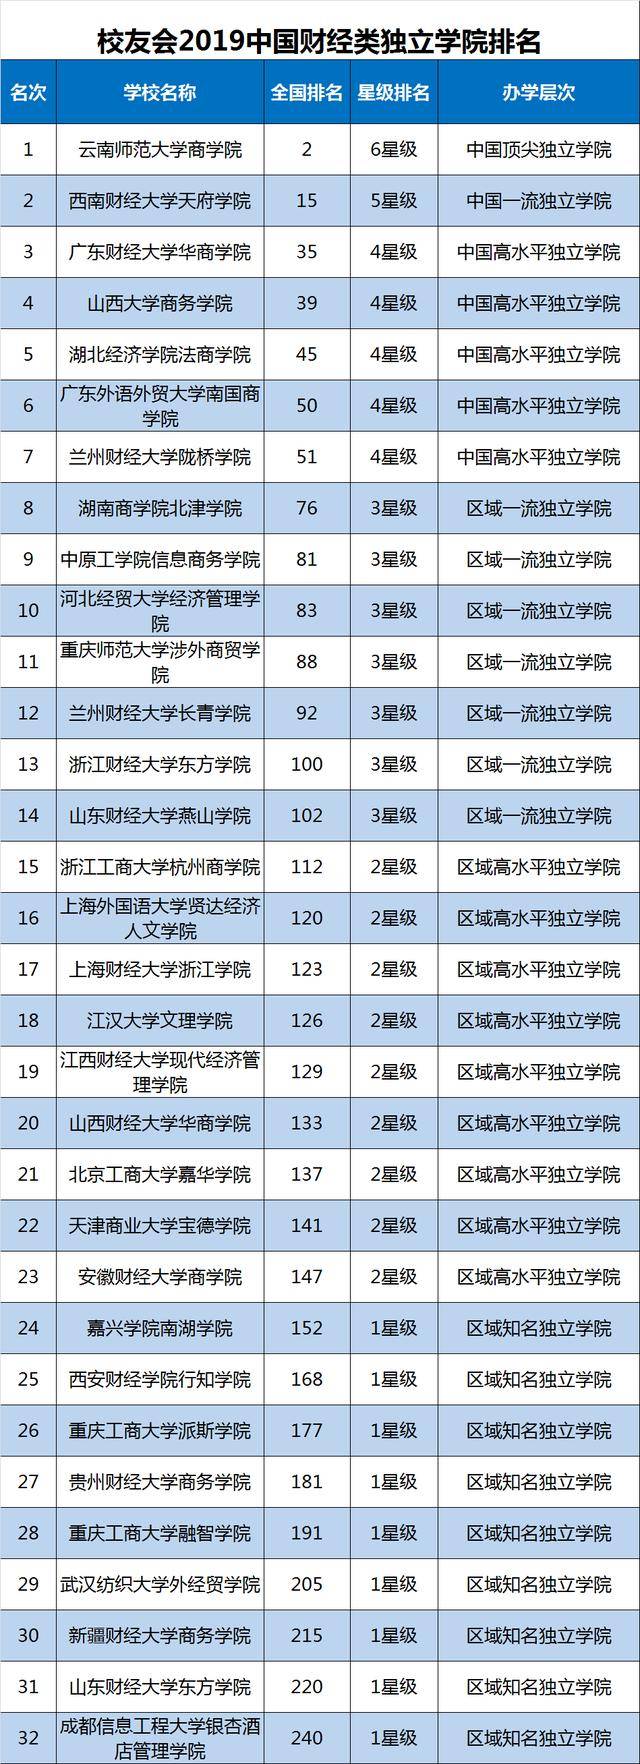 2019财类大学排名50强,中南财法大学第1,上财第2!